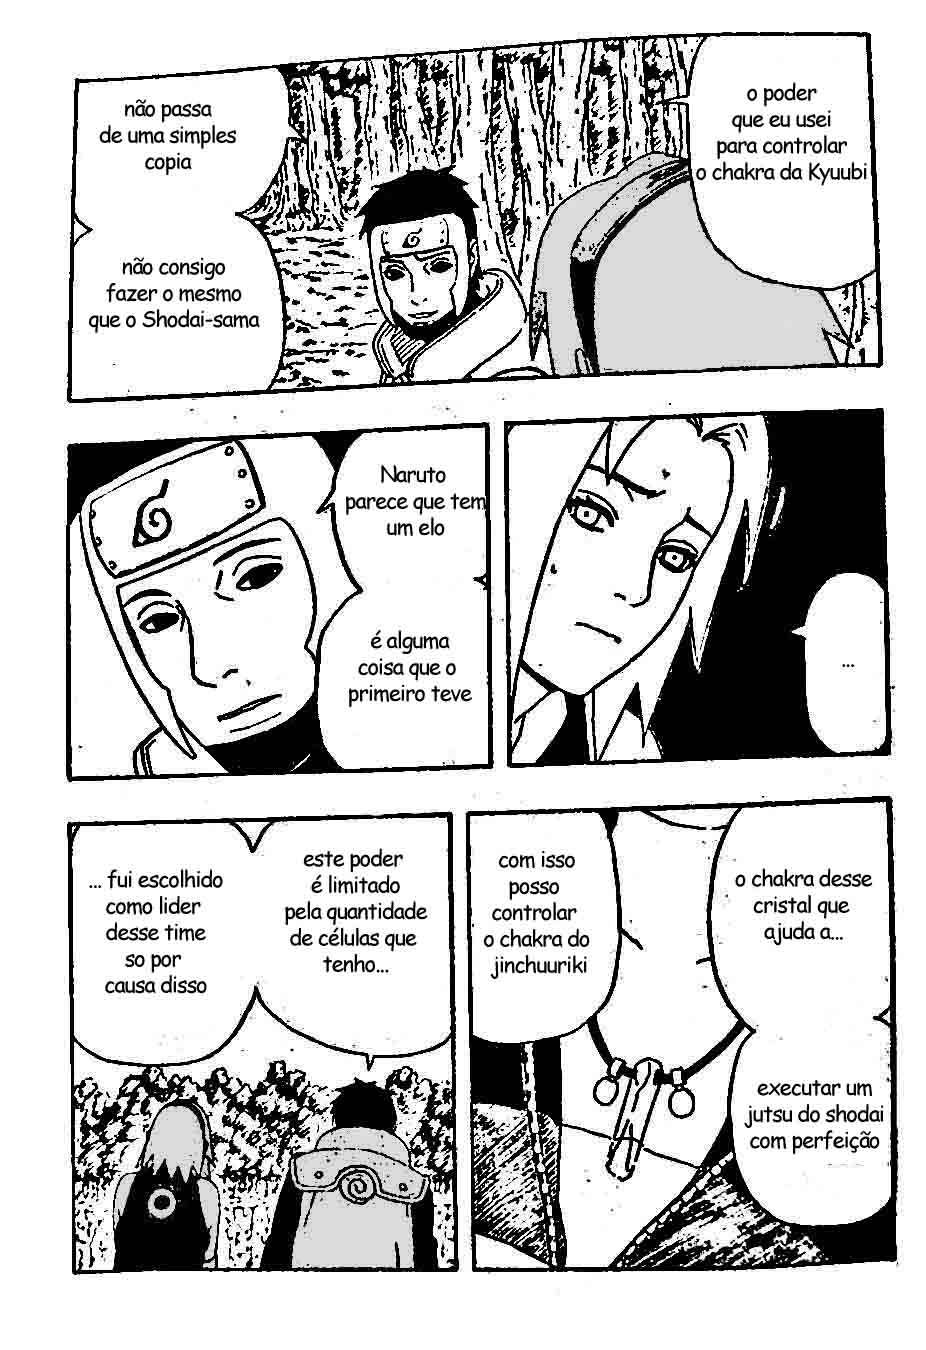 [Classificação] Níveis de poder em Naruto - Página 4 08